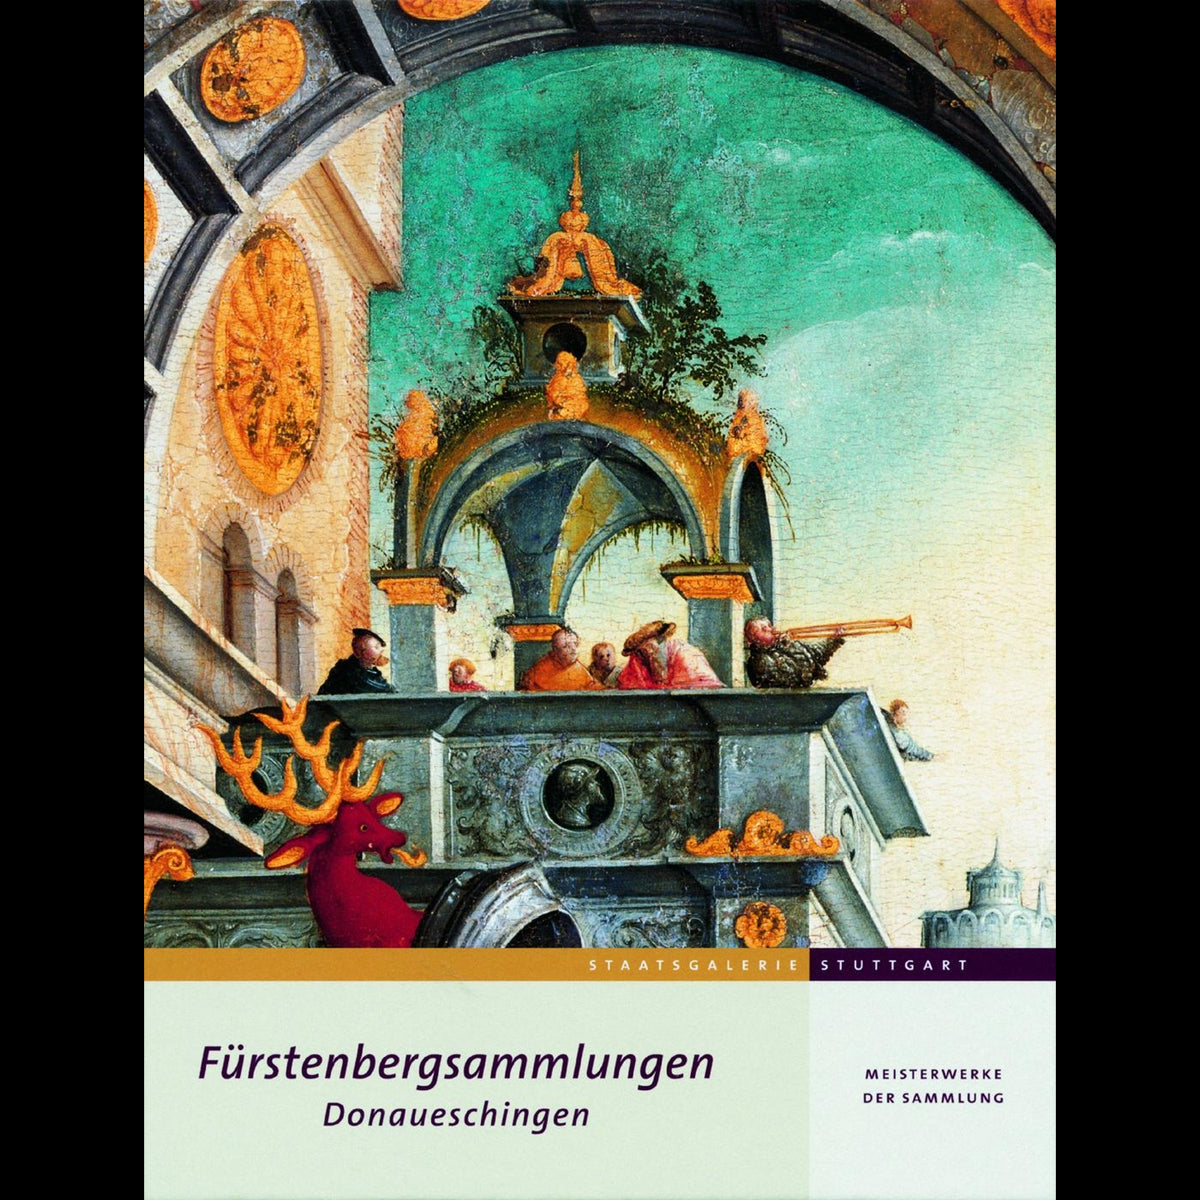 Coverbild Meisterwerke der Fürstenbergsammlungen Donaueschingen in der Staatsgalerie Stuttgart